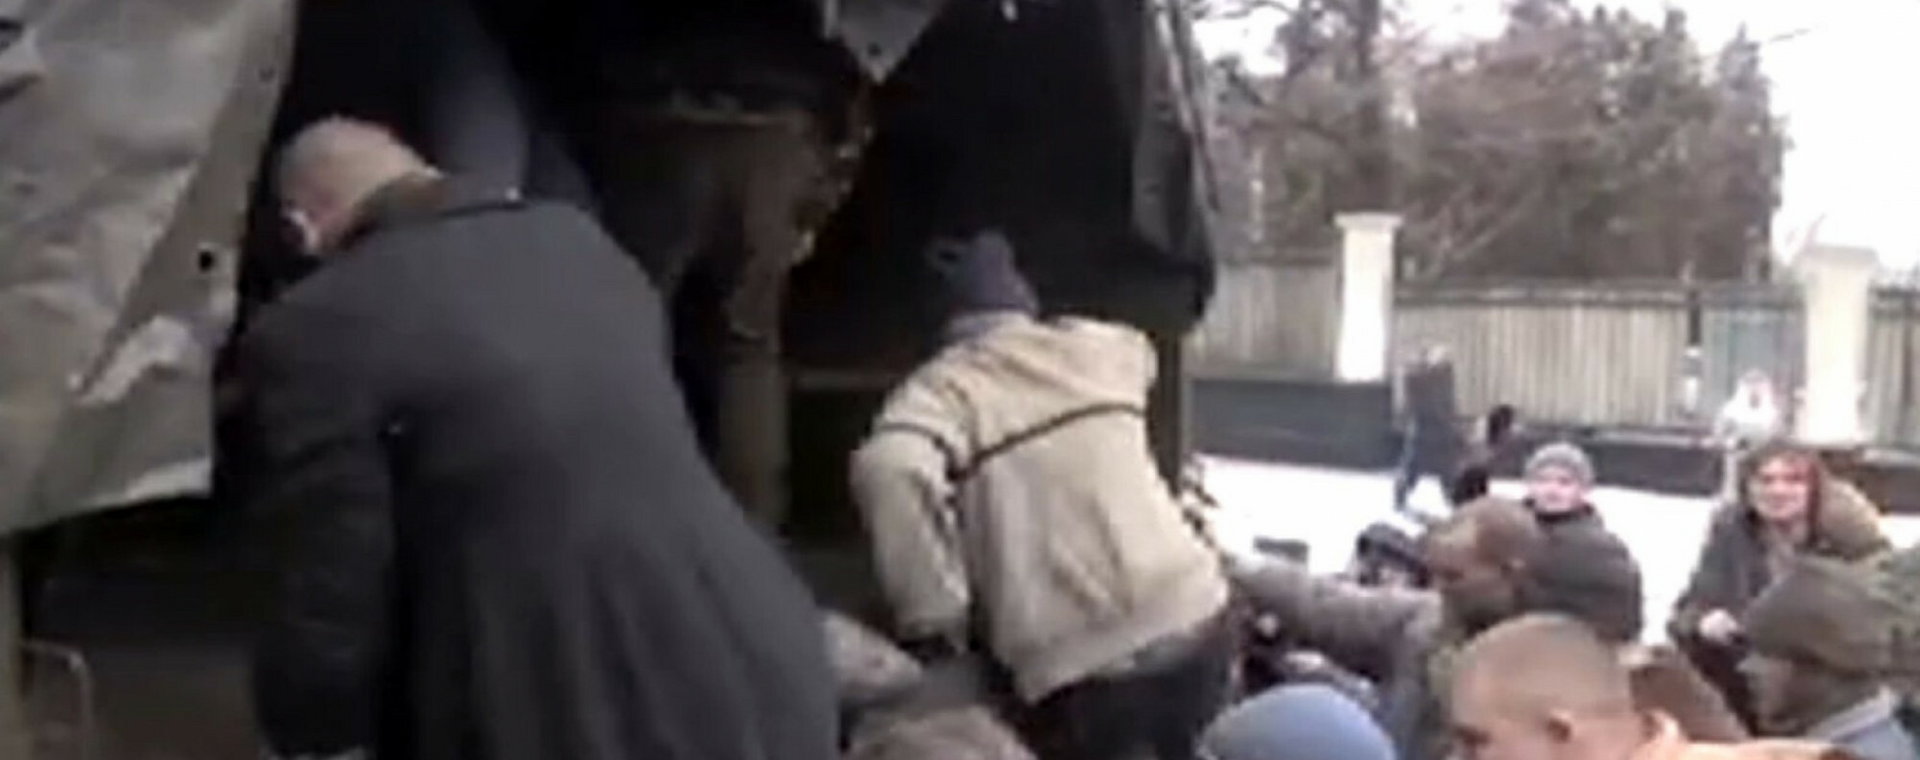 Donbas, Ukraina, styczeń 2015. Kadry z nagrania pokazującego traktowanie ukraińskich jeńców przez separatystów z Donbasu.